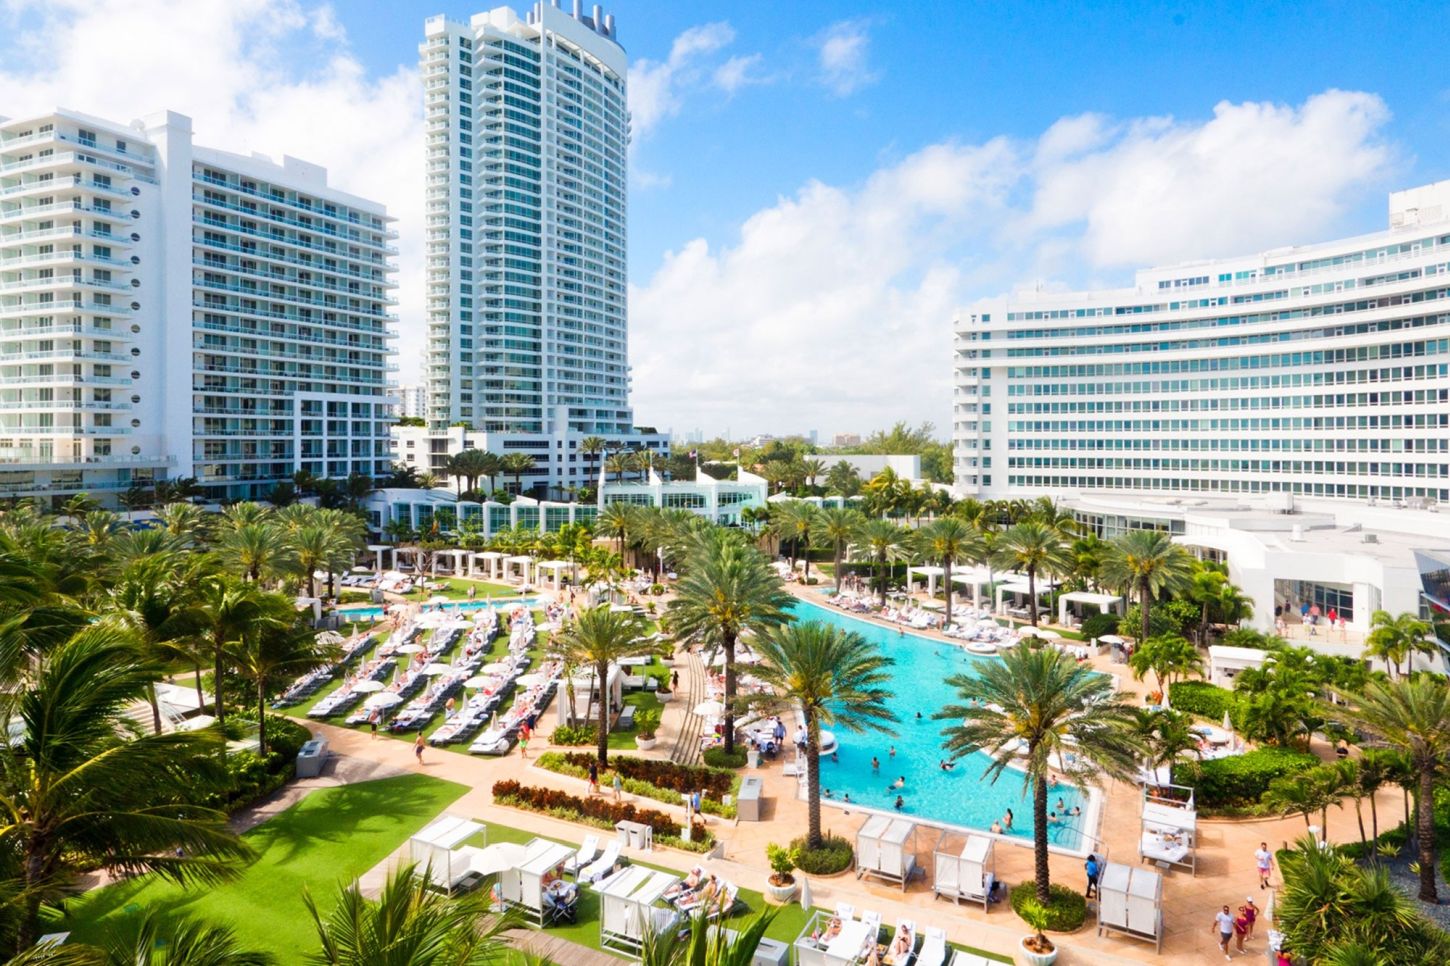 Das Fontainebleau Hotel in Miami